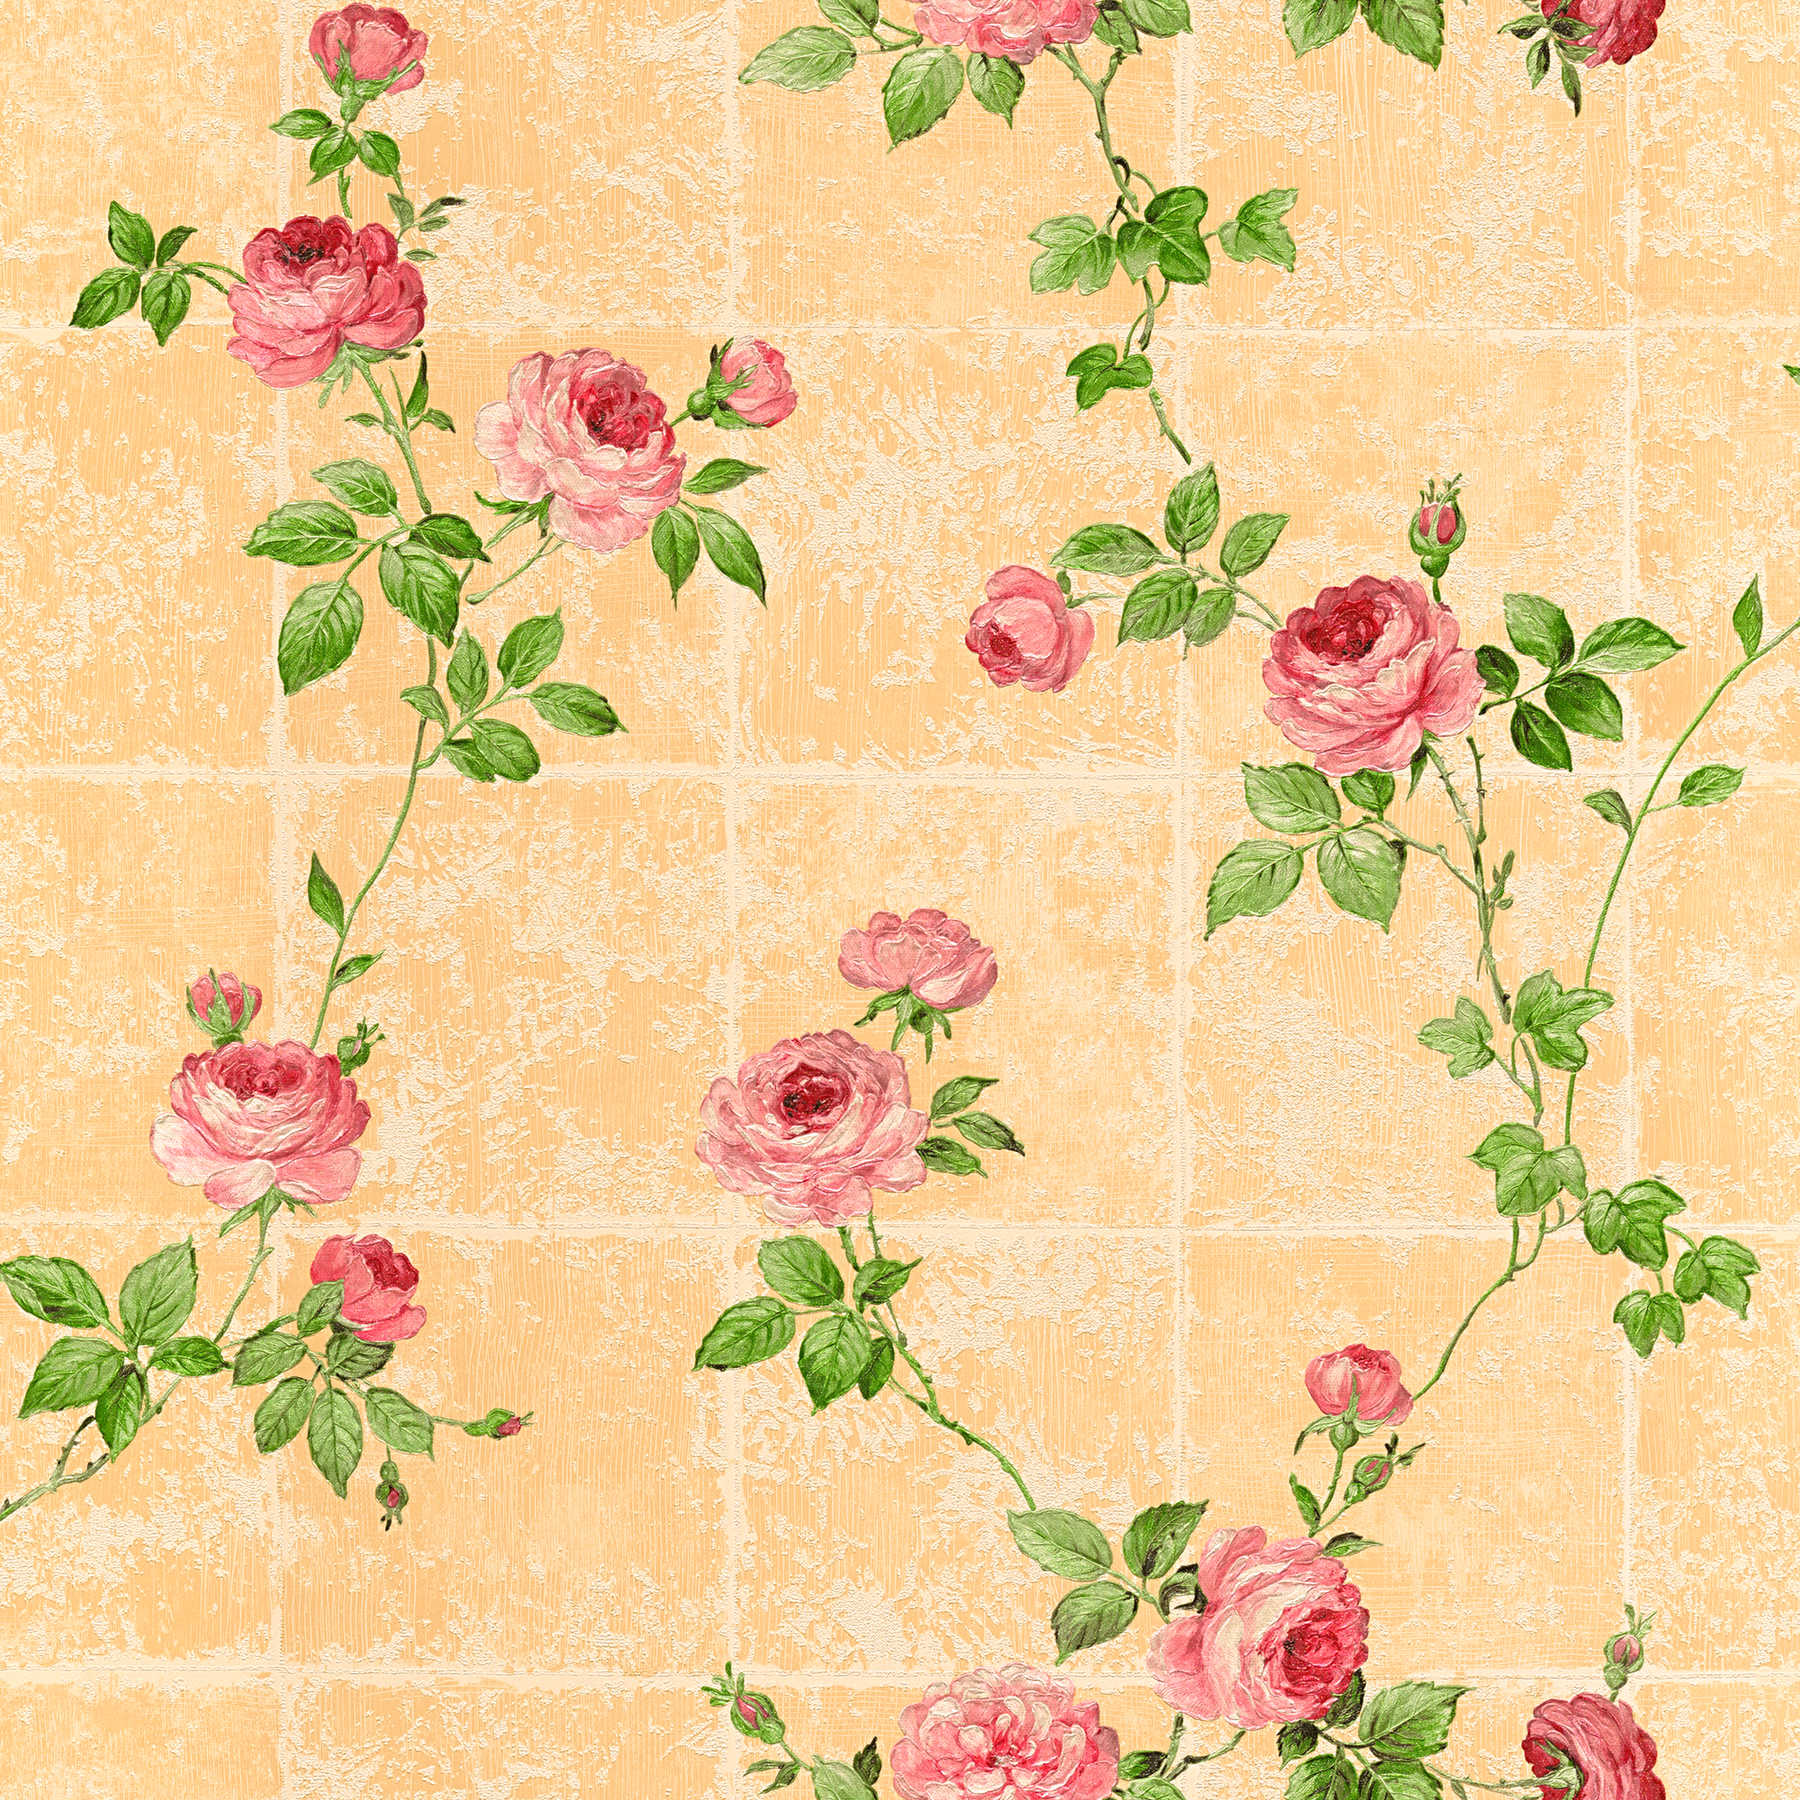 Fliesenoptik Tapete rustikal mit Rosen – Bunt
